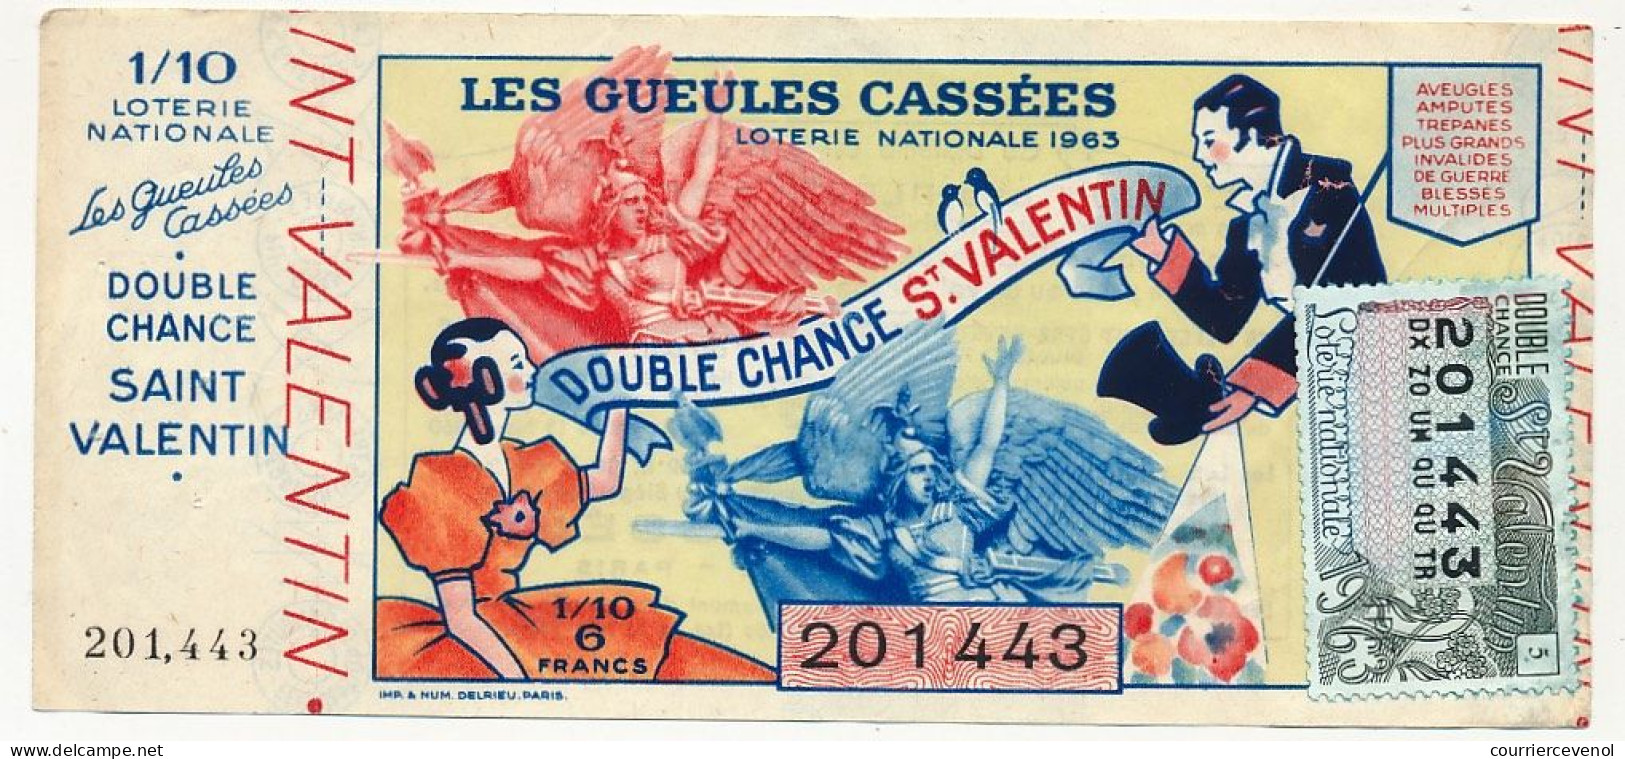 FRANCE - Loterie Nationale - Double Chance Saint Valentin - Gueules Cassées - 1/10ème 1963 - Loterijbiljetten